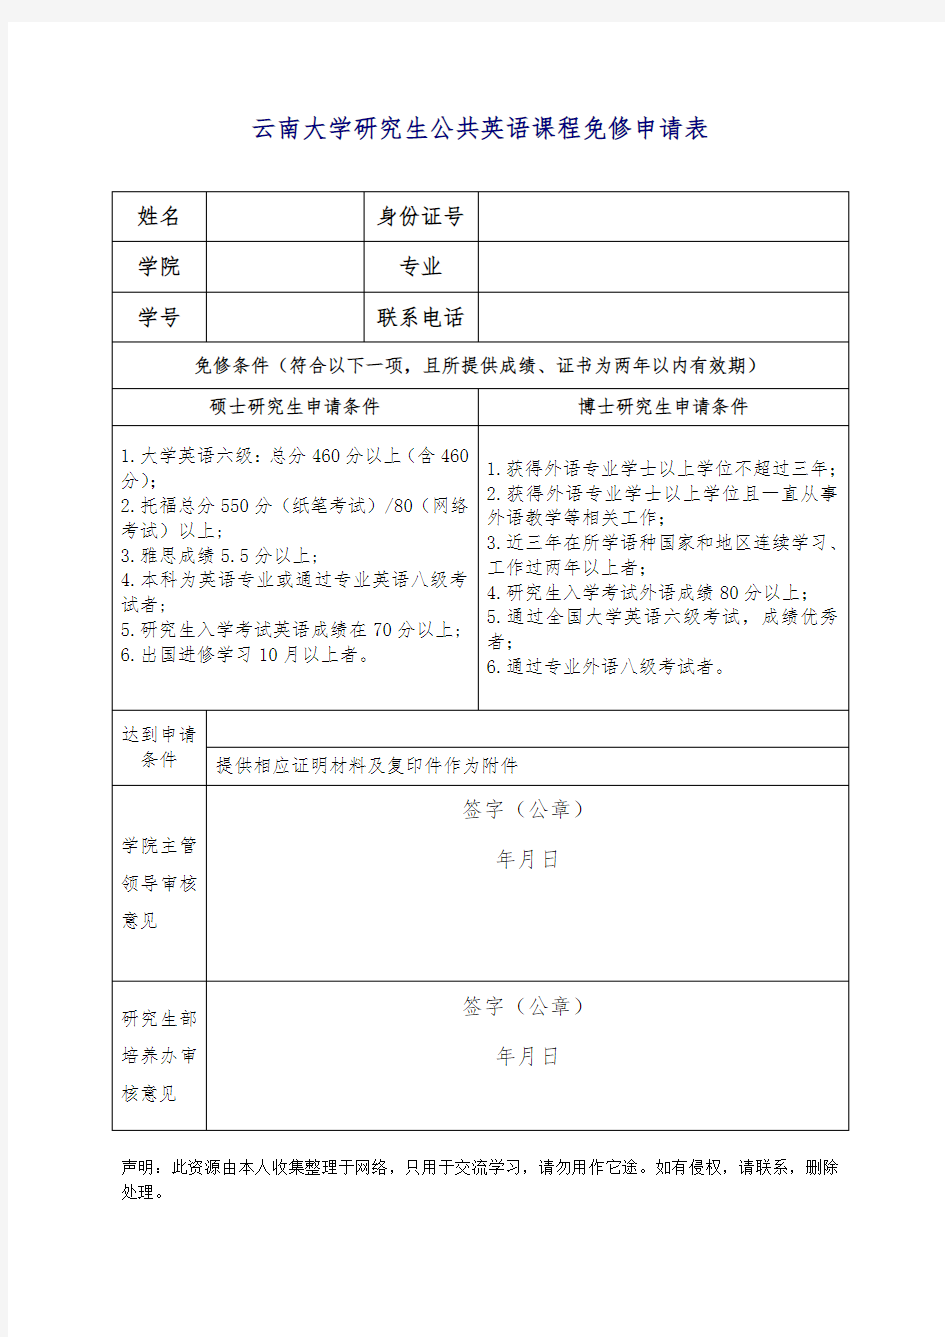 云南大学研究生公共英语课程免修申请表